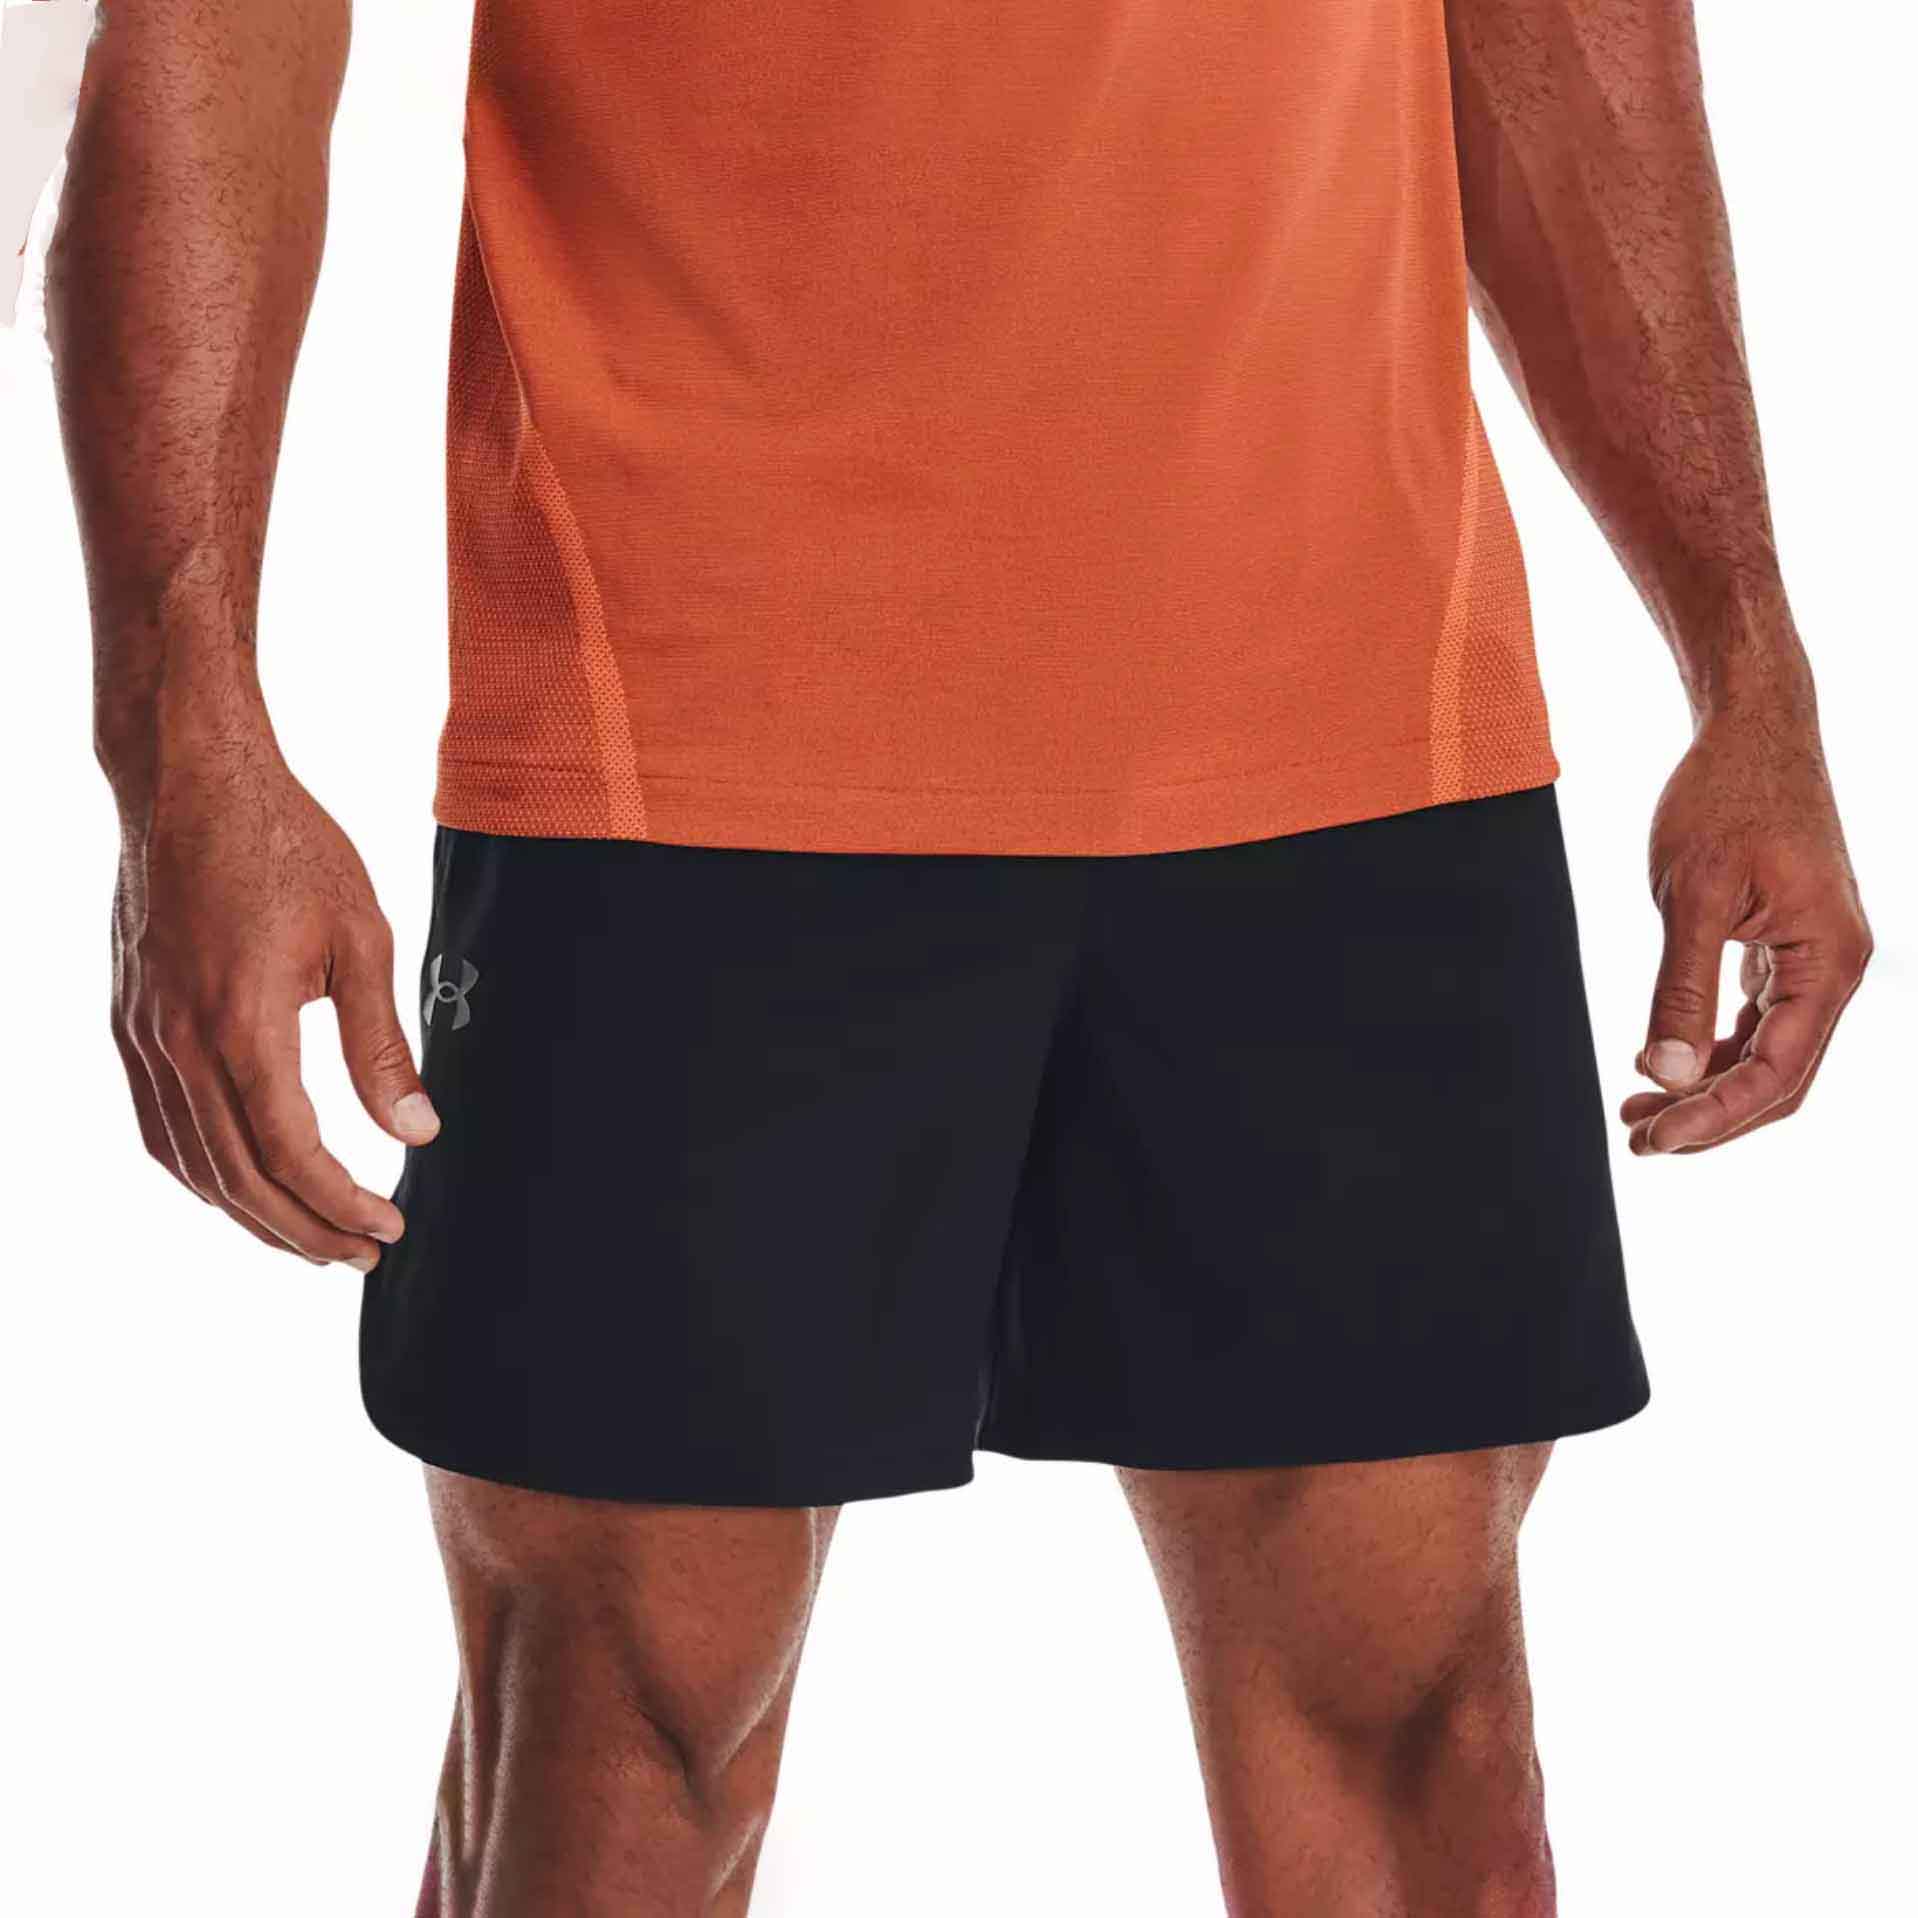 Mean wearing orange shirt and black gym shorts